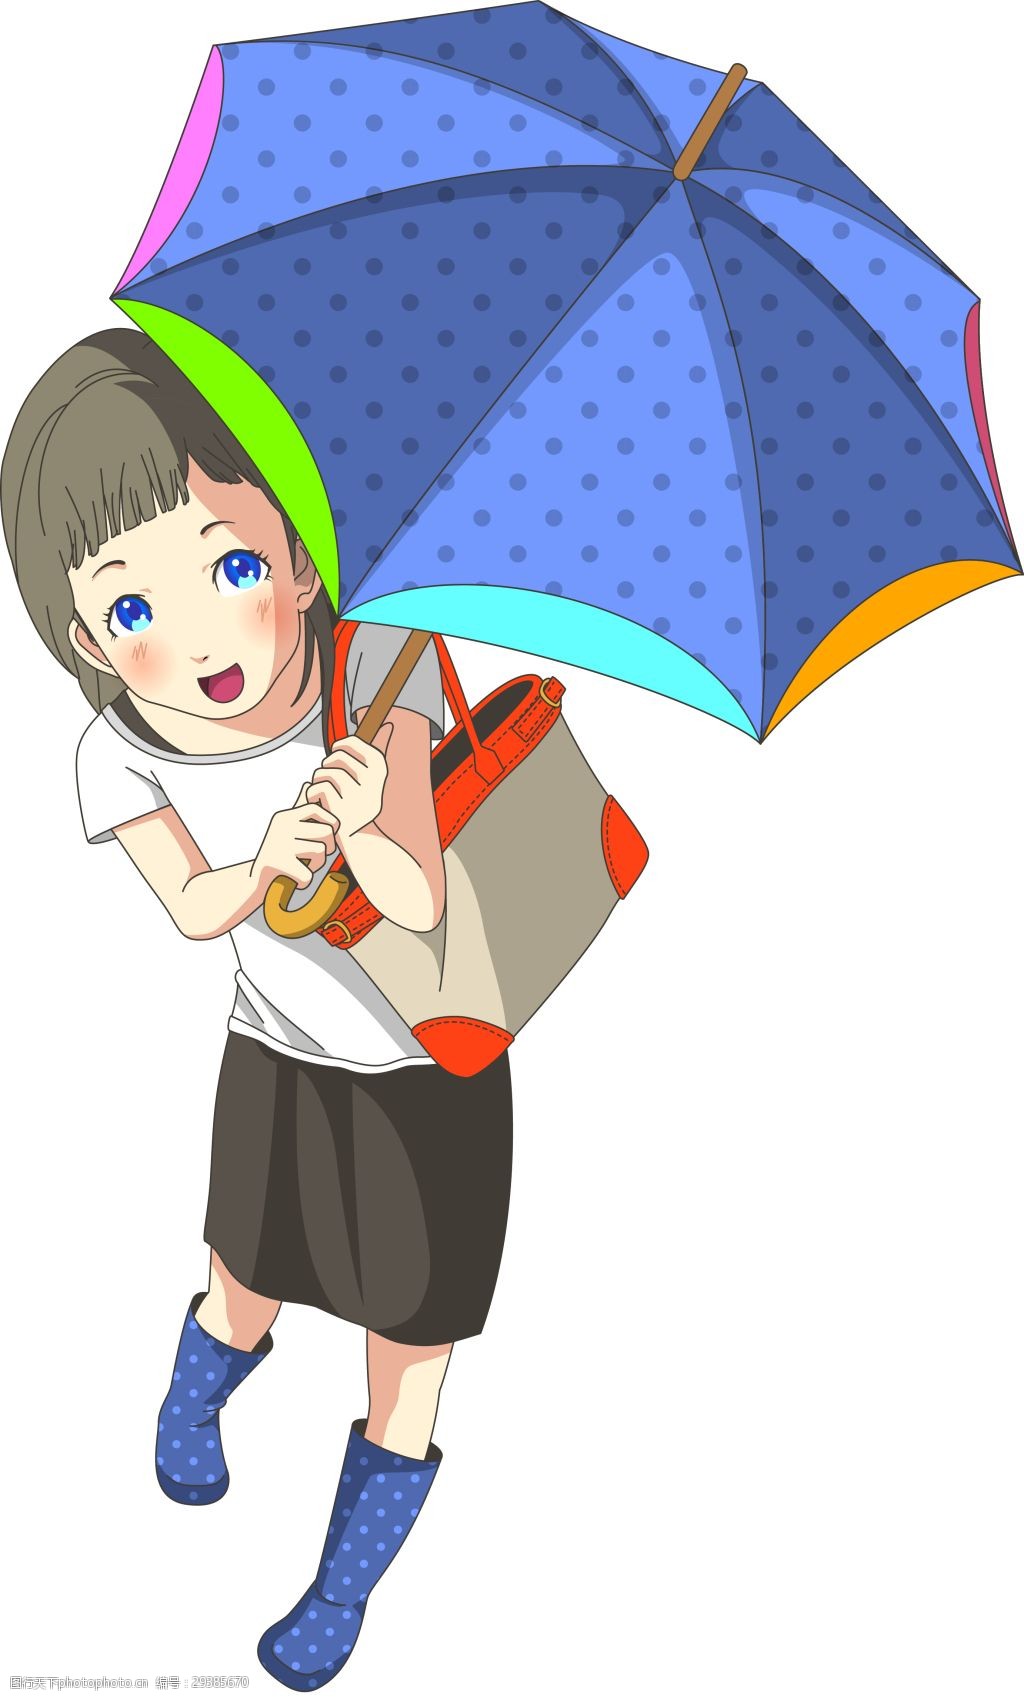 【动漫美图】打伞的女孩们 - 哔哩哔哩